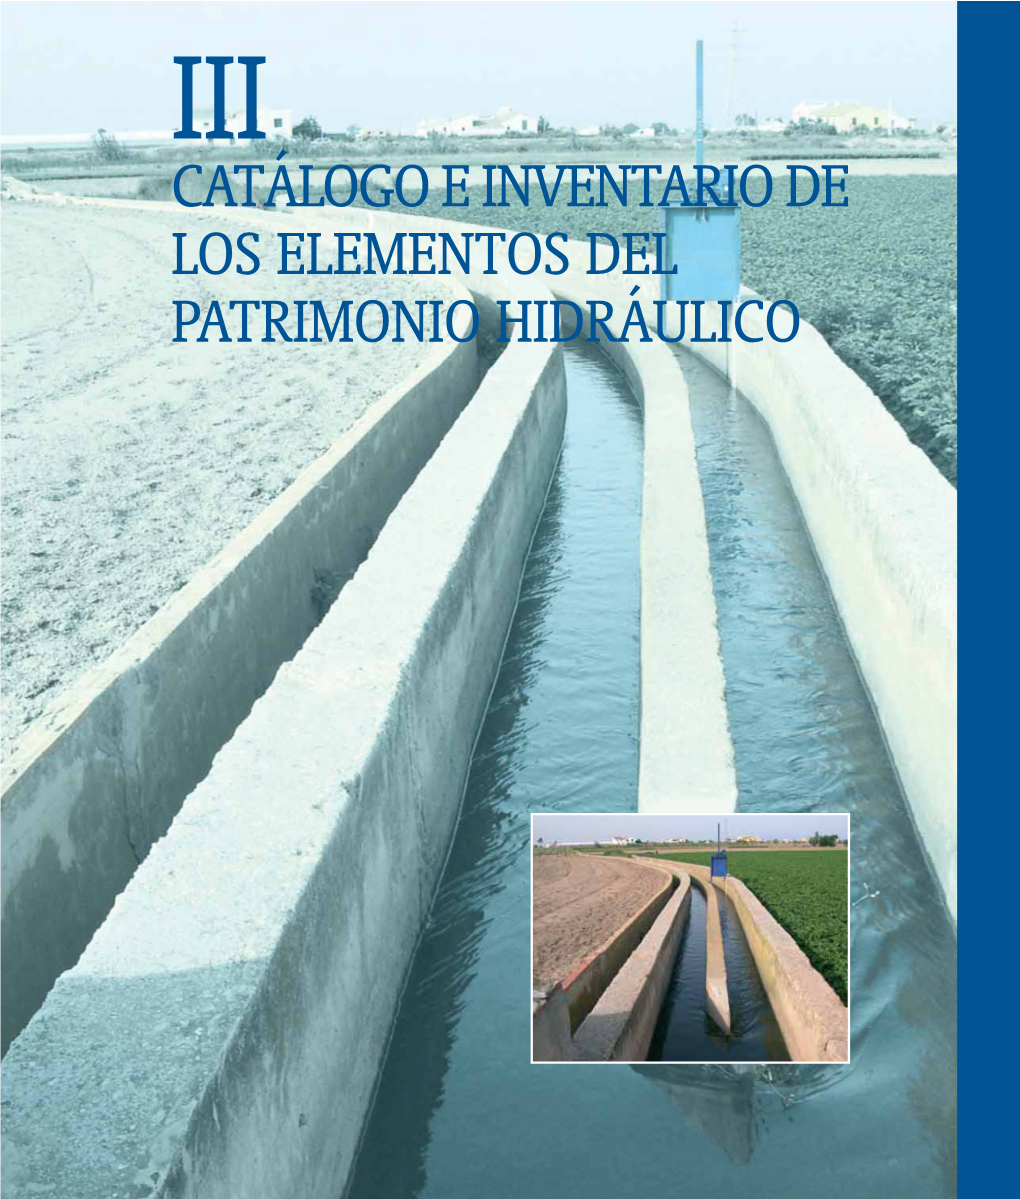 Catálogo E Inventario De Los Elementos Del Patrimonio Hidráulico 3.1